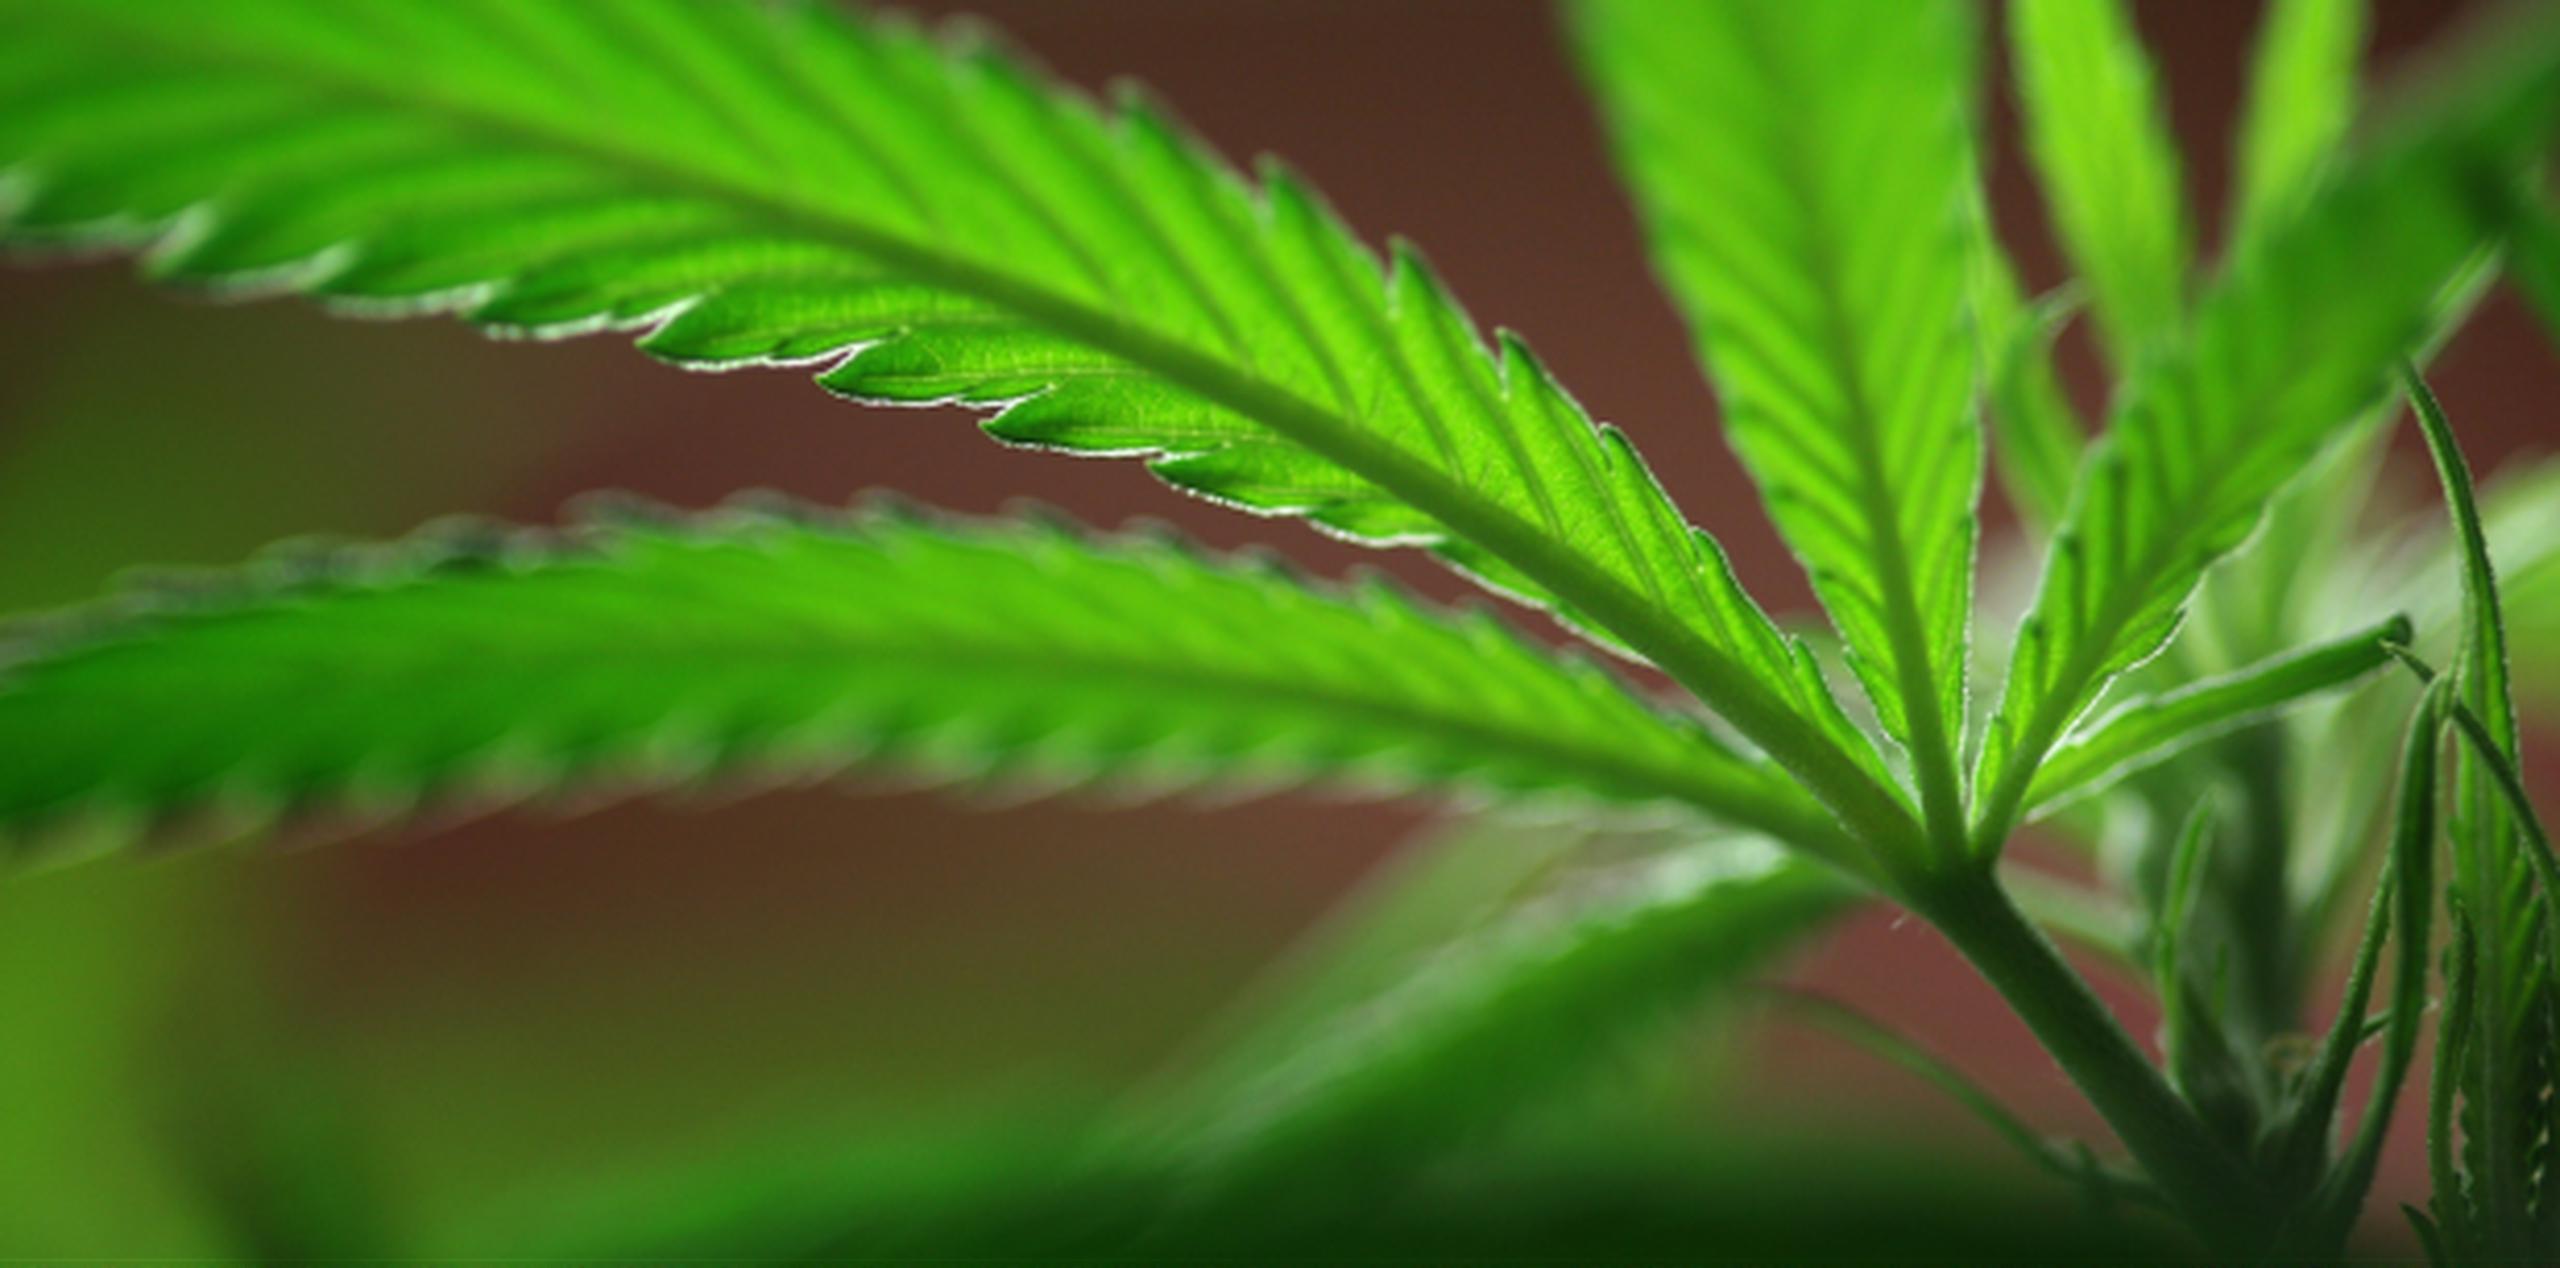 La Policía indicó que se ocuparon un total de 40 libras de marihuana de la variedad “cripy” con un valor de más de $92,000. (Archivo)